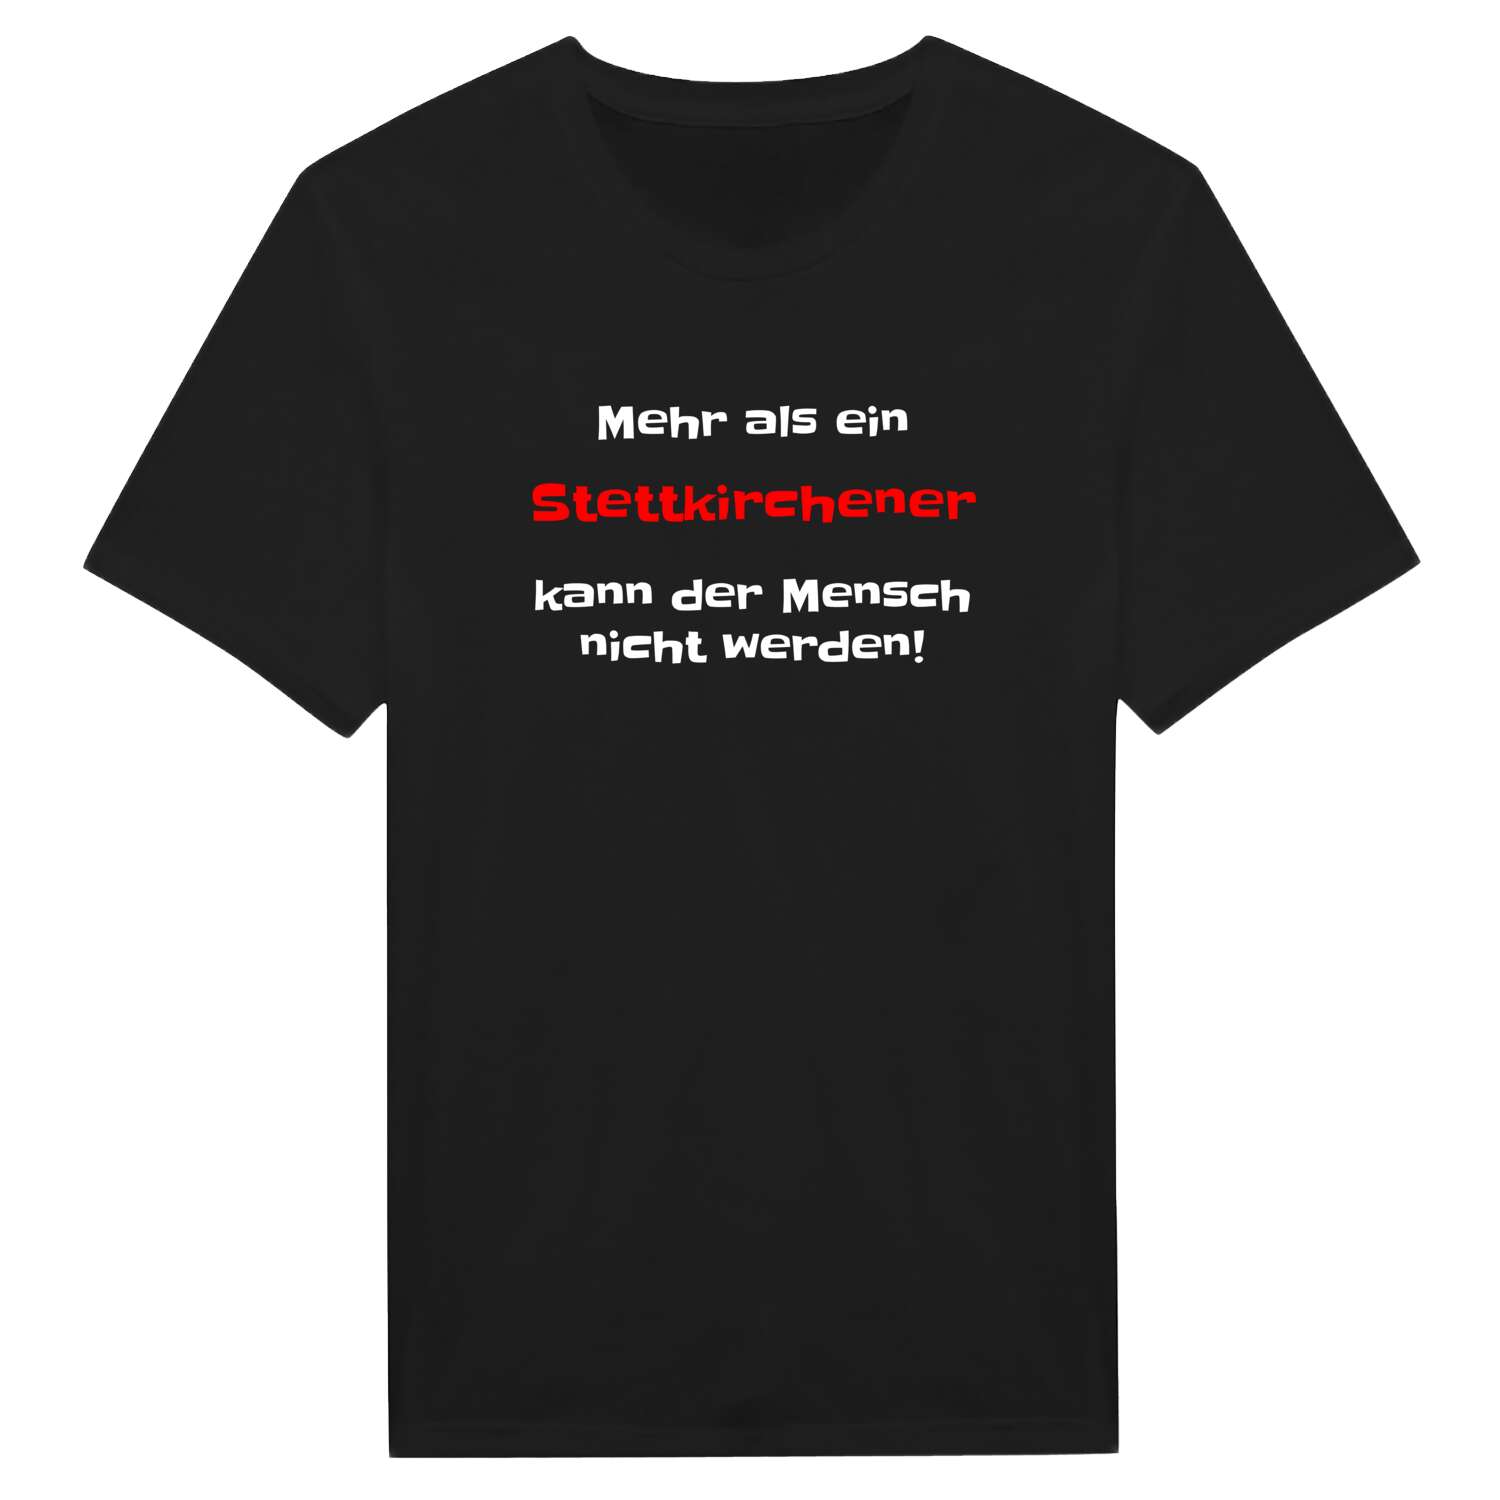 Stettkirchen T-Shirt »Mehr als ein«